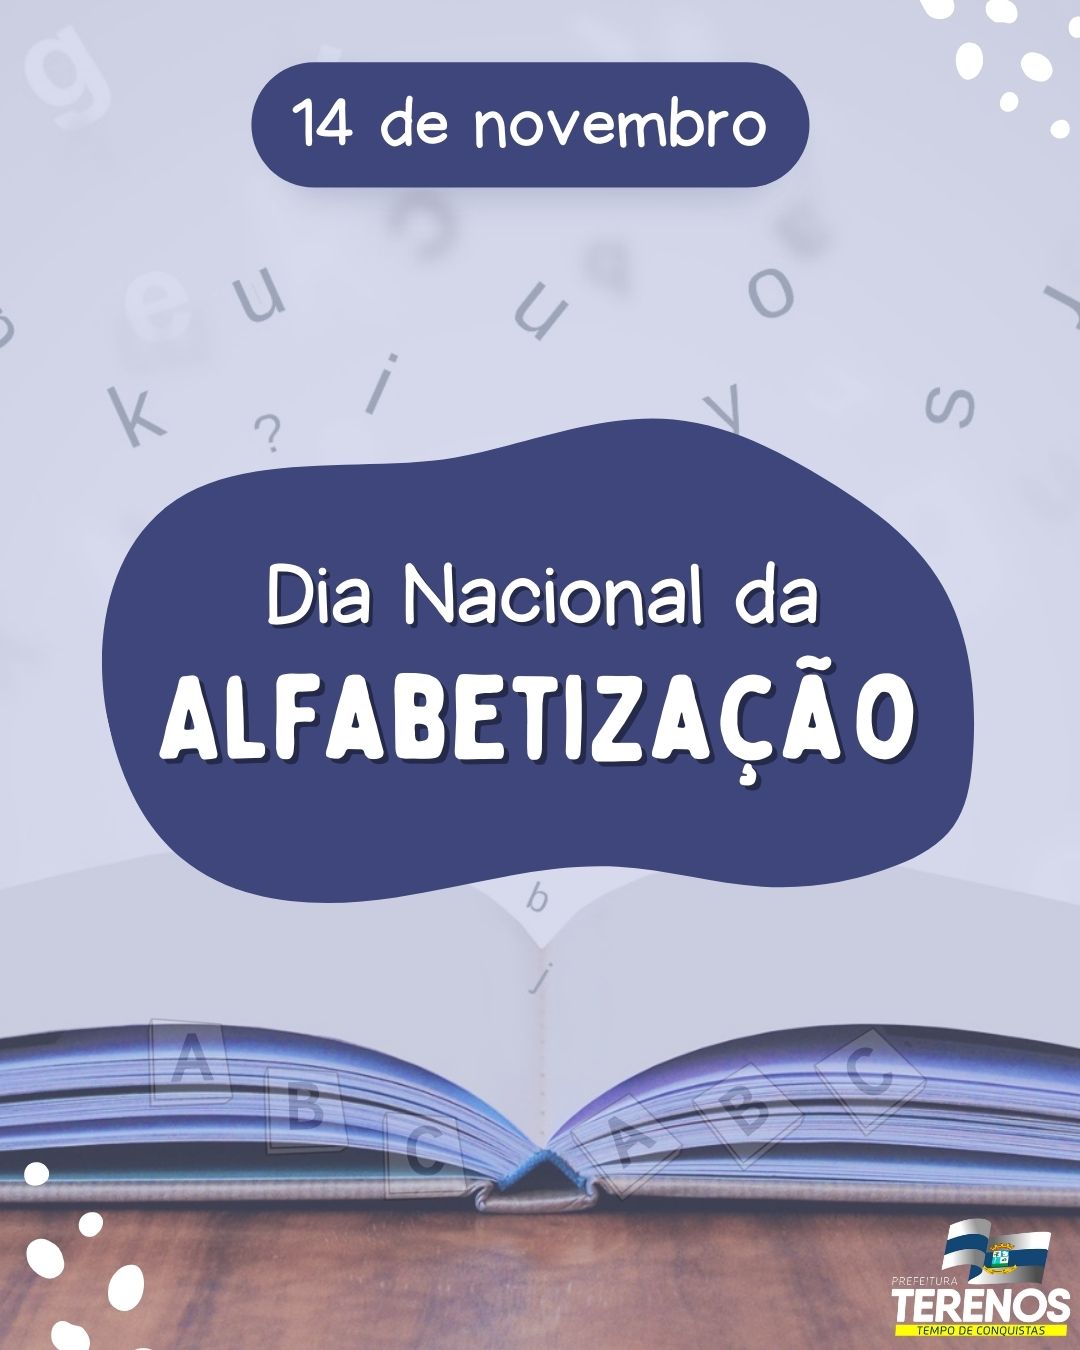 14 de Novembro dia Nacional da Alfabetização